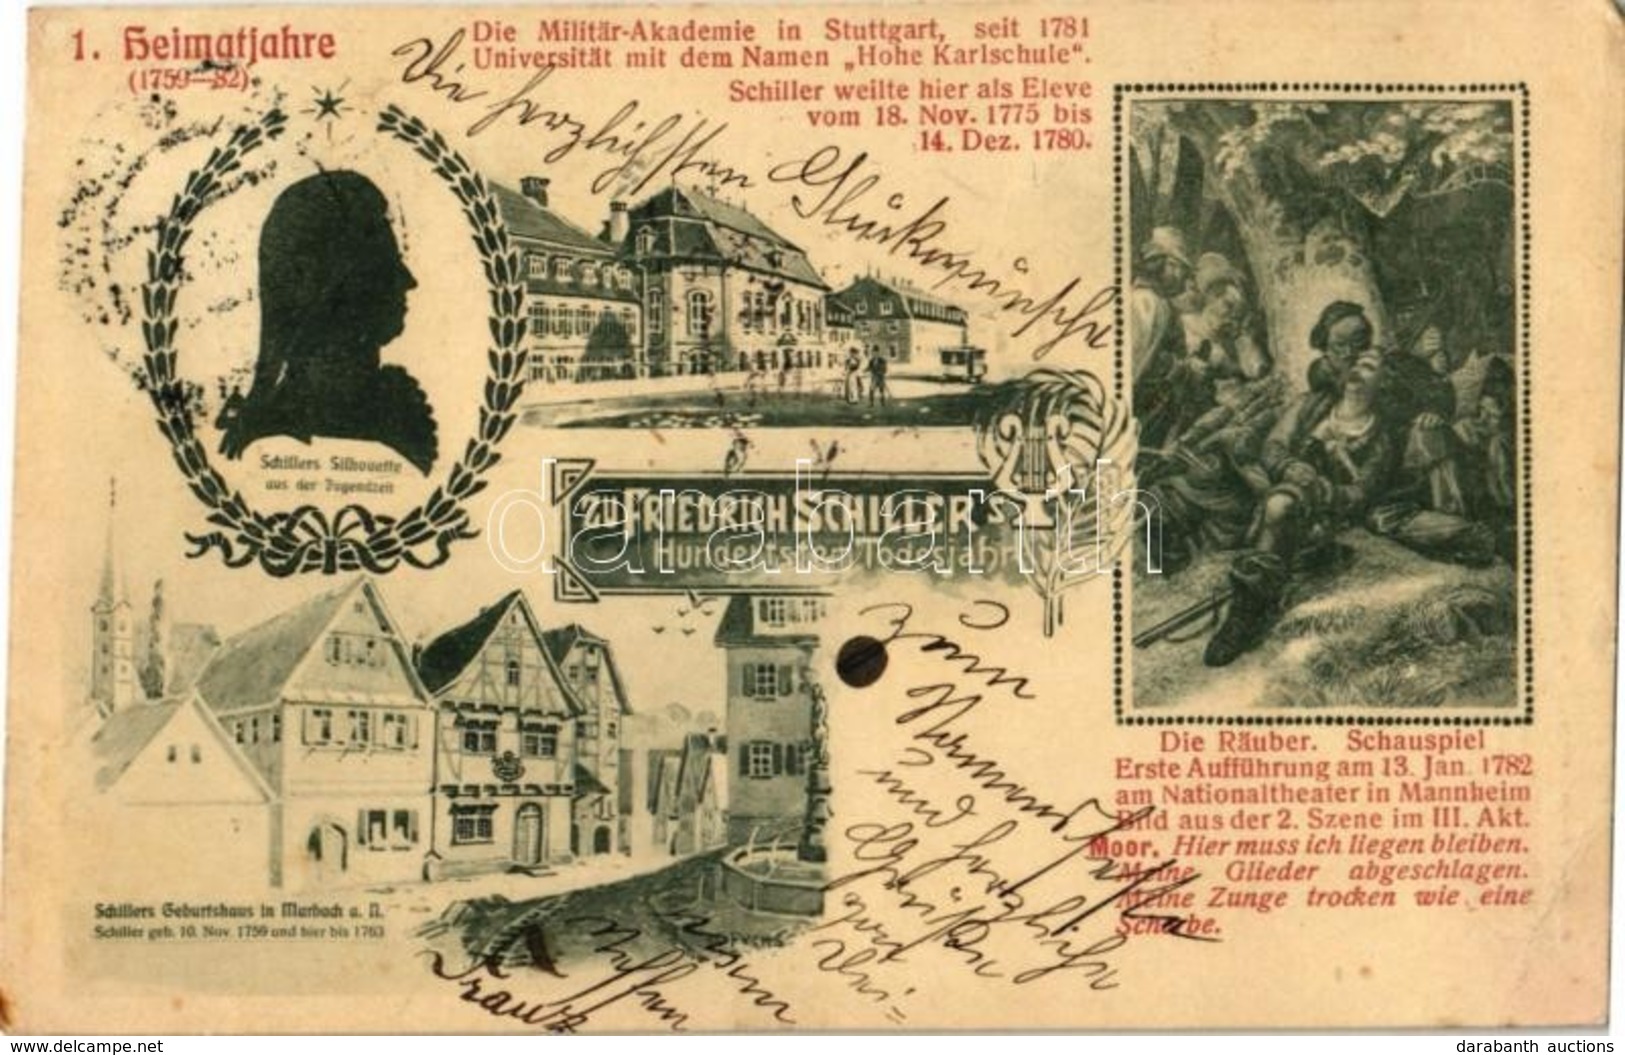 T2/T3 1905 Zu Friedrich Schiller's Hundertsten Todesjahr. 1. Heimatjahre (1759-82), Die Militär-Akademie In Stuttgart, S - Unclassified